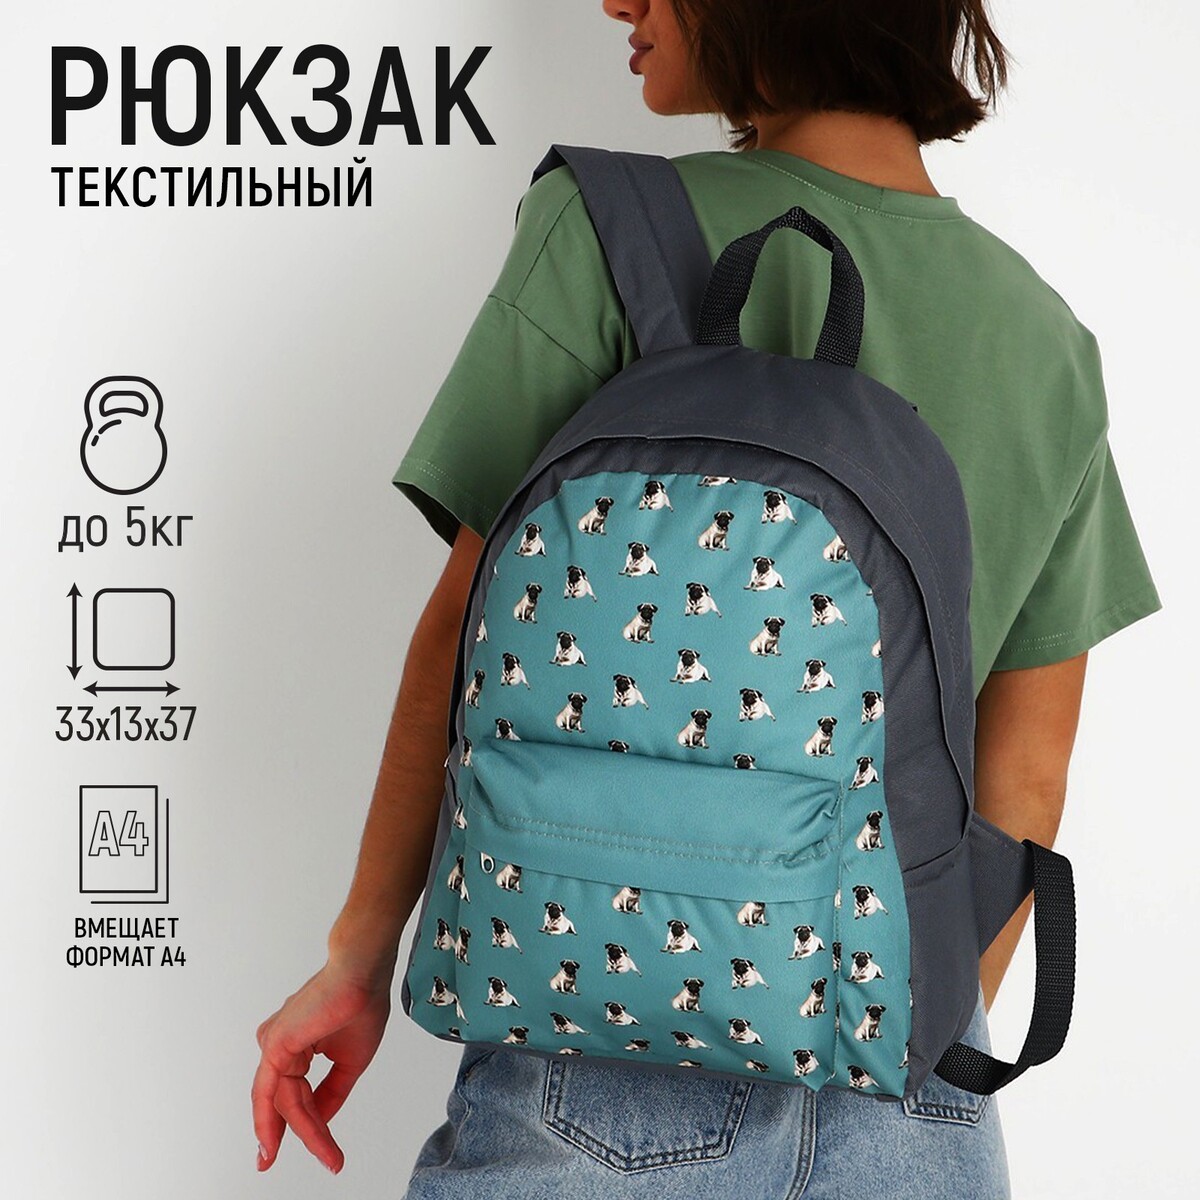 Рюкзак текстильный мопсы, с карманом, цвет серый рюкзак с карманом 22 см х 10 см х 30 см